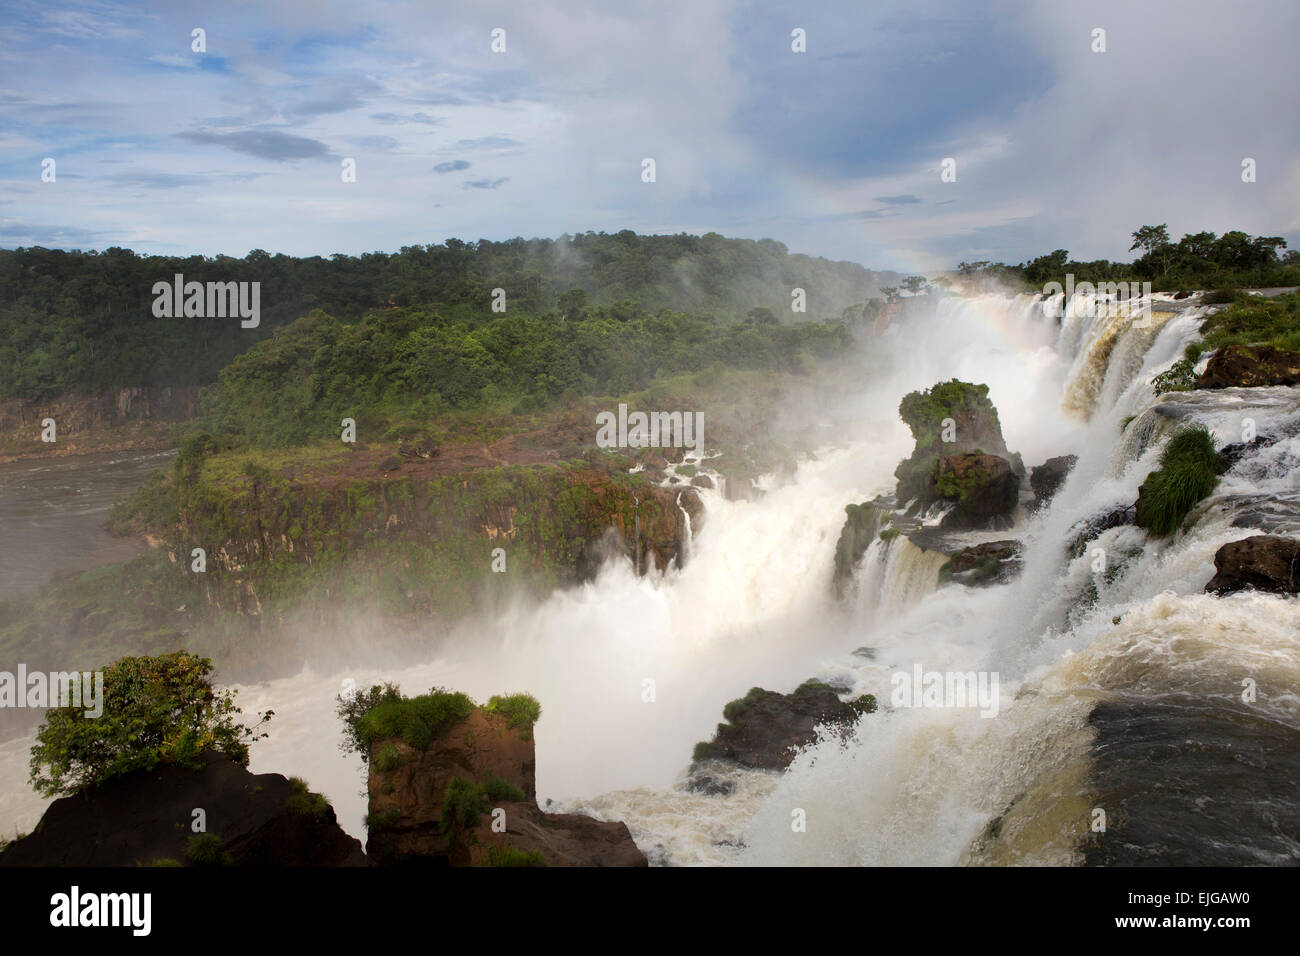 L'Argentine, Iguazu, Isla San Martin et arc-en-ciel au-dessus des chutes d'eau après de fortes pluies Banque D'Images